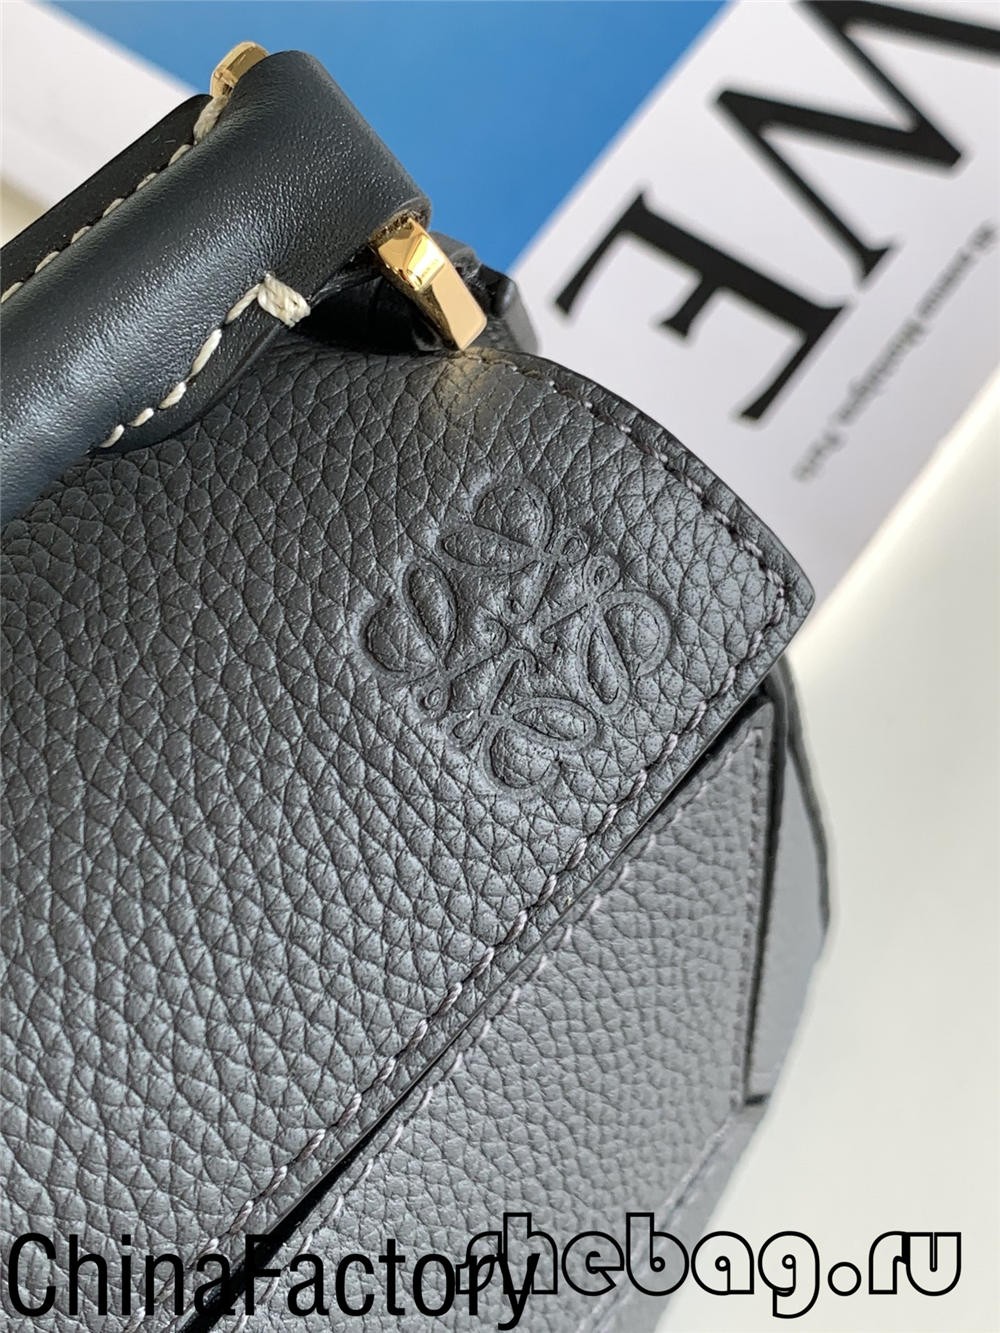 รีวิวกระเป๋าจำลอง Loewe ที่ดีที่สุด: Loewe Cubi (อัปเดต 2022) - ร้านค้าออนไลน์กระเป๋าปลอม Louis Vuitton คุณภาพดีที่สุด, กระเป๋าออกแบบแบบจำลอง ru